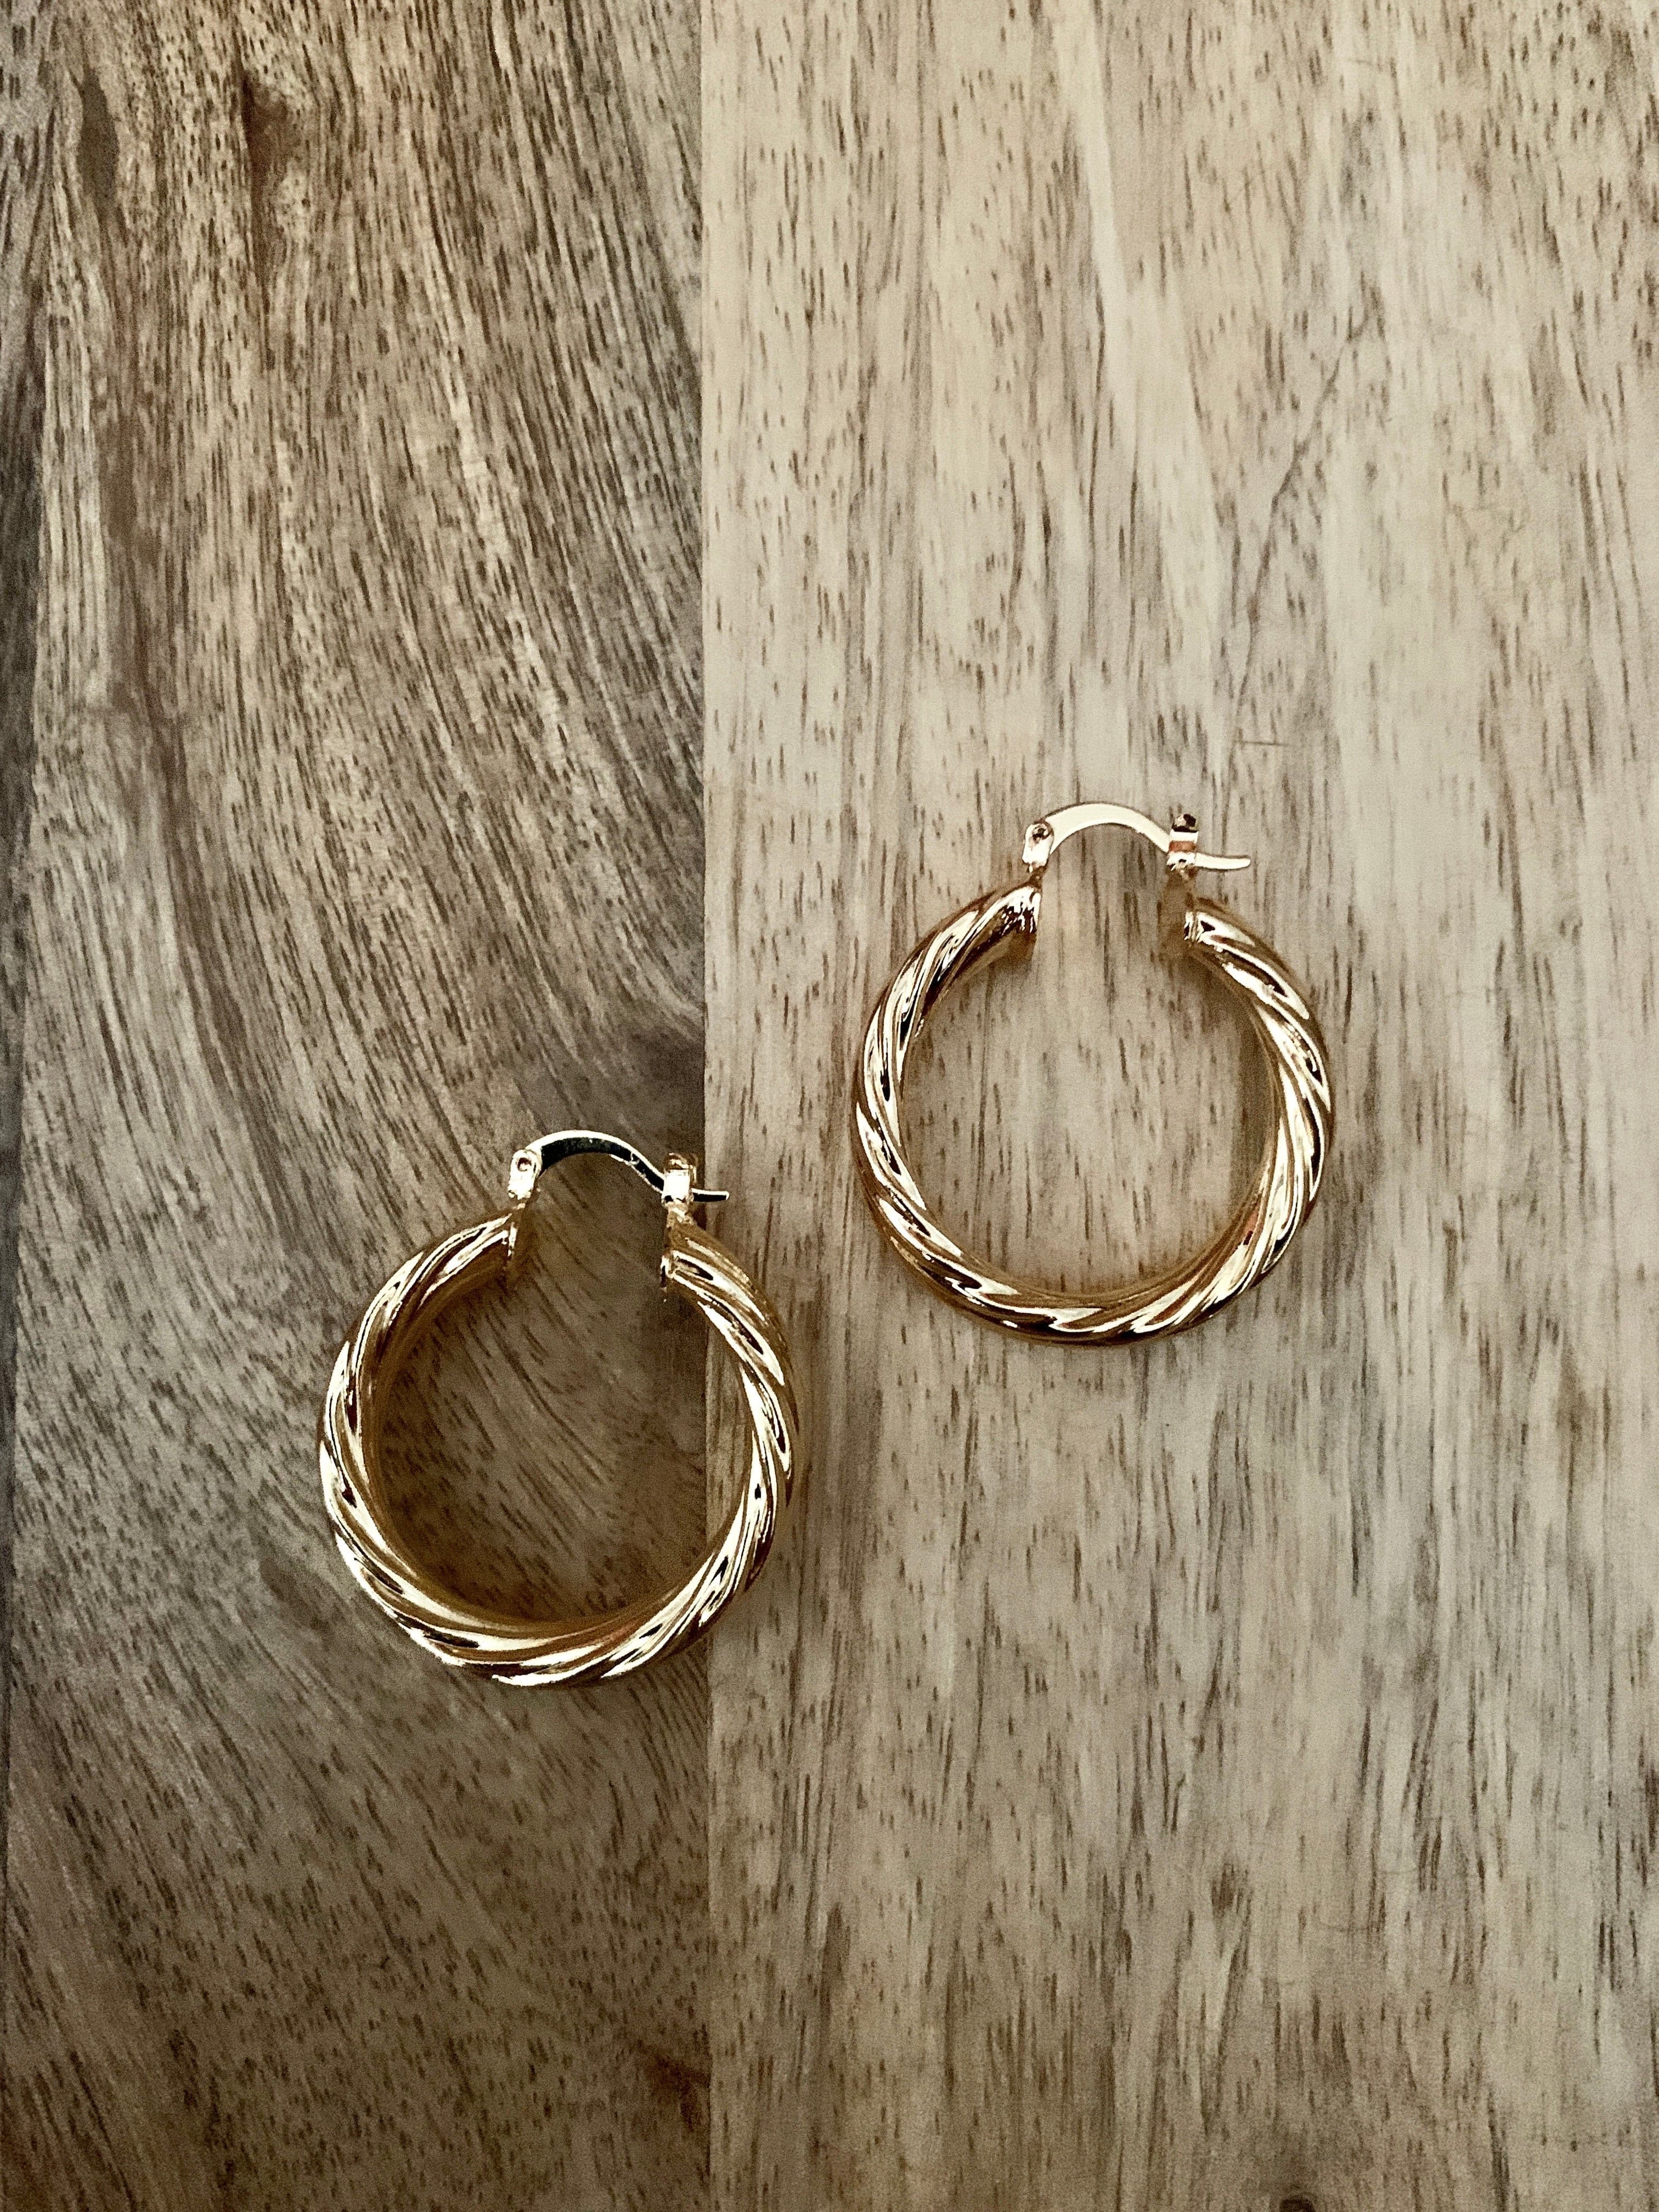 Chunky Gold Hoop Earrings.